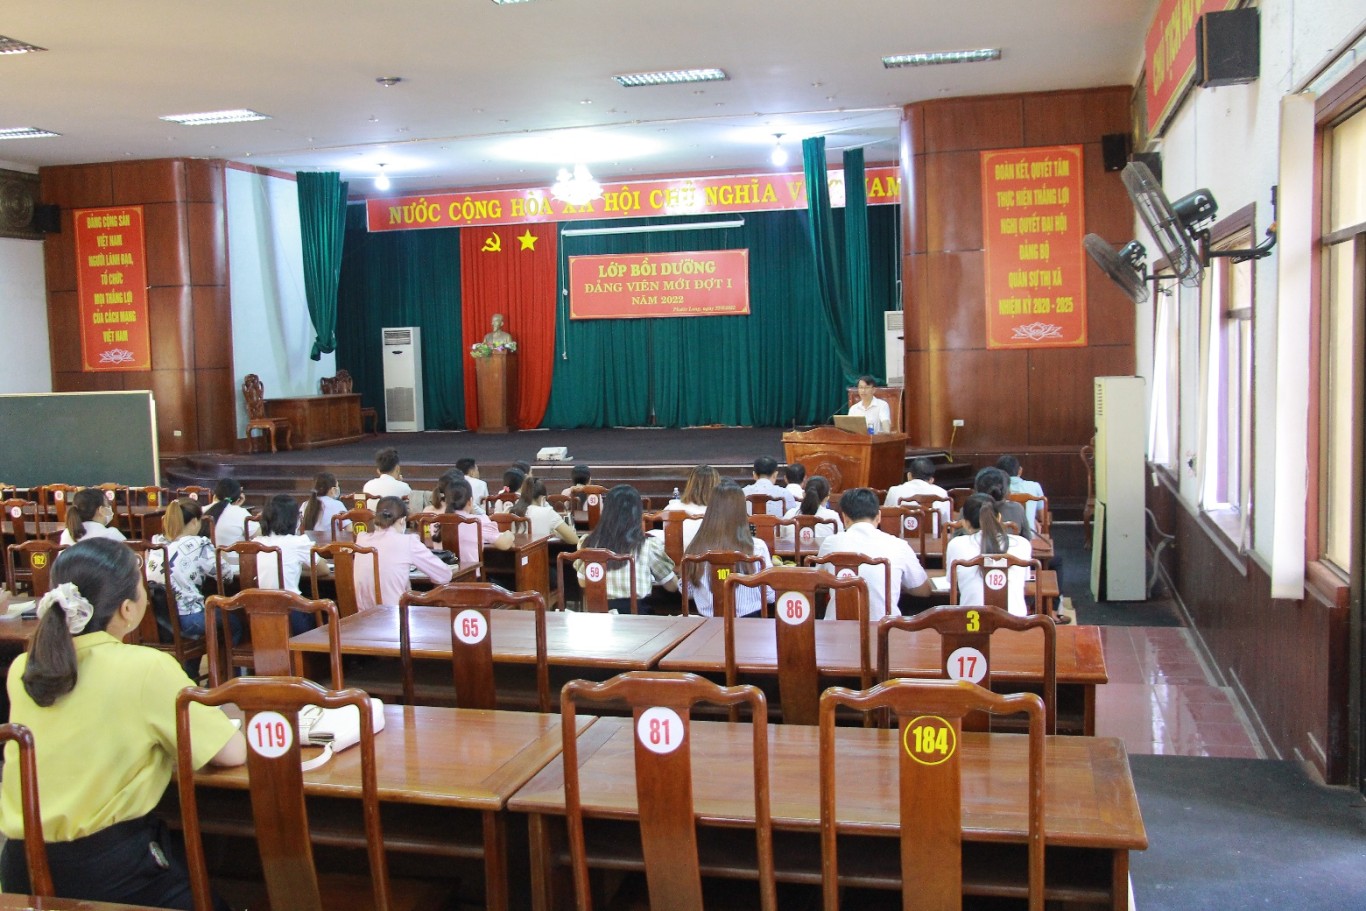 Phước Long khai giảng lớp Bồi dưỡng đảng viên mới đợt 1 năm 2022